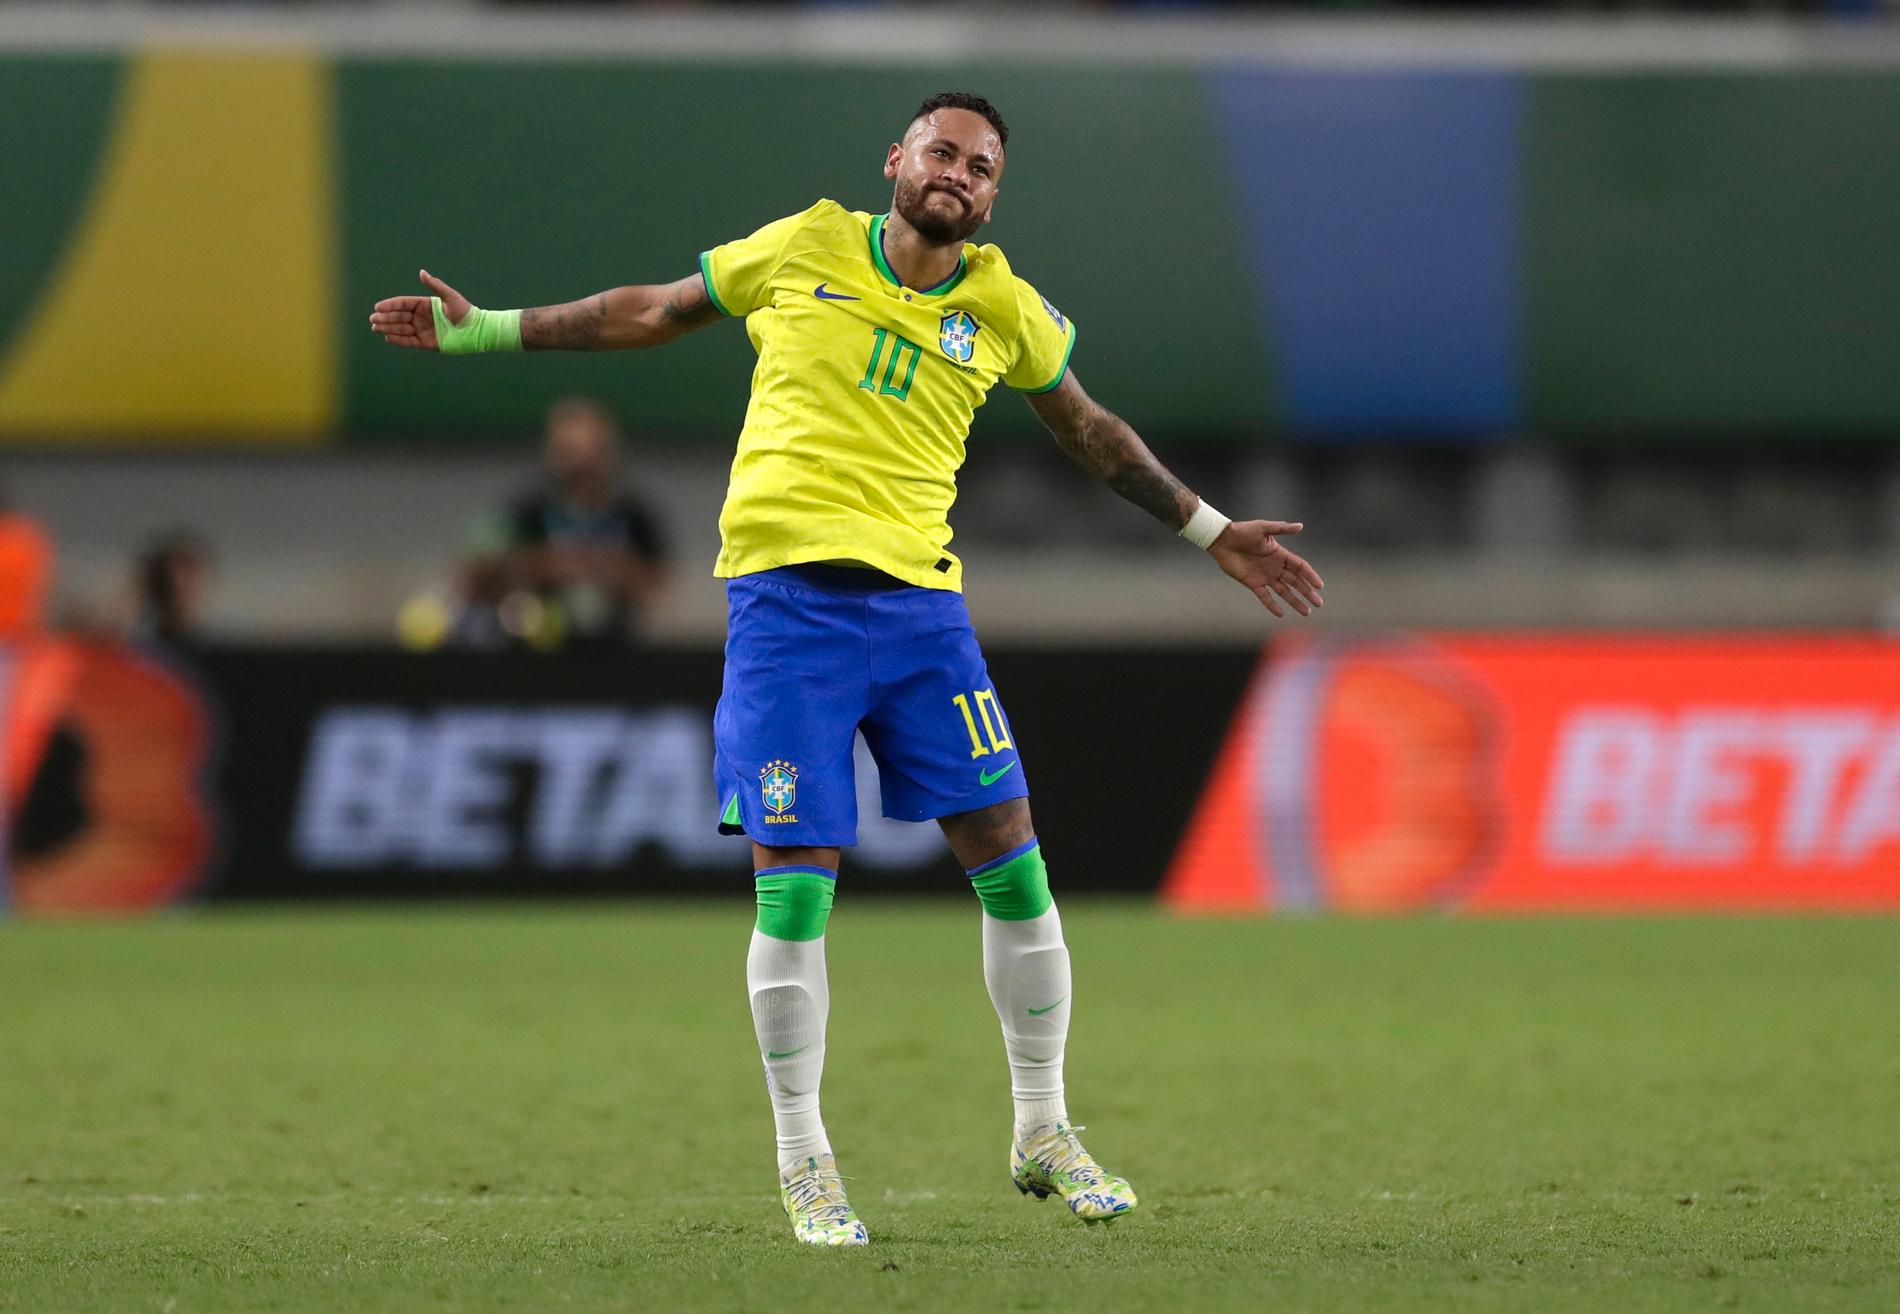 Brasiliens Neymar firar efter att ha gjort lagets fjärde mål och att han därmed passerade Pelé som det brasilianska landslagets främste målgörare.